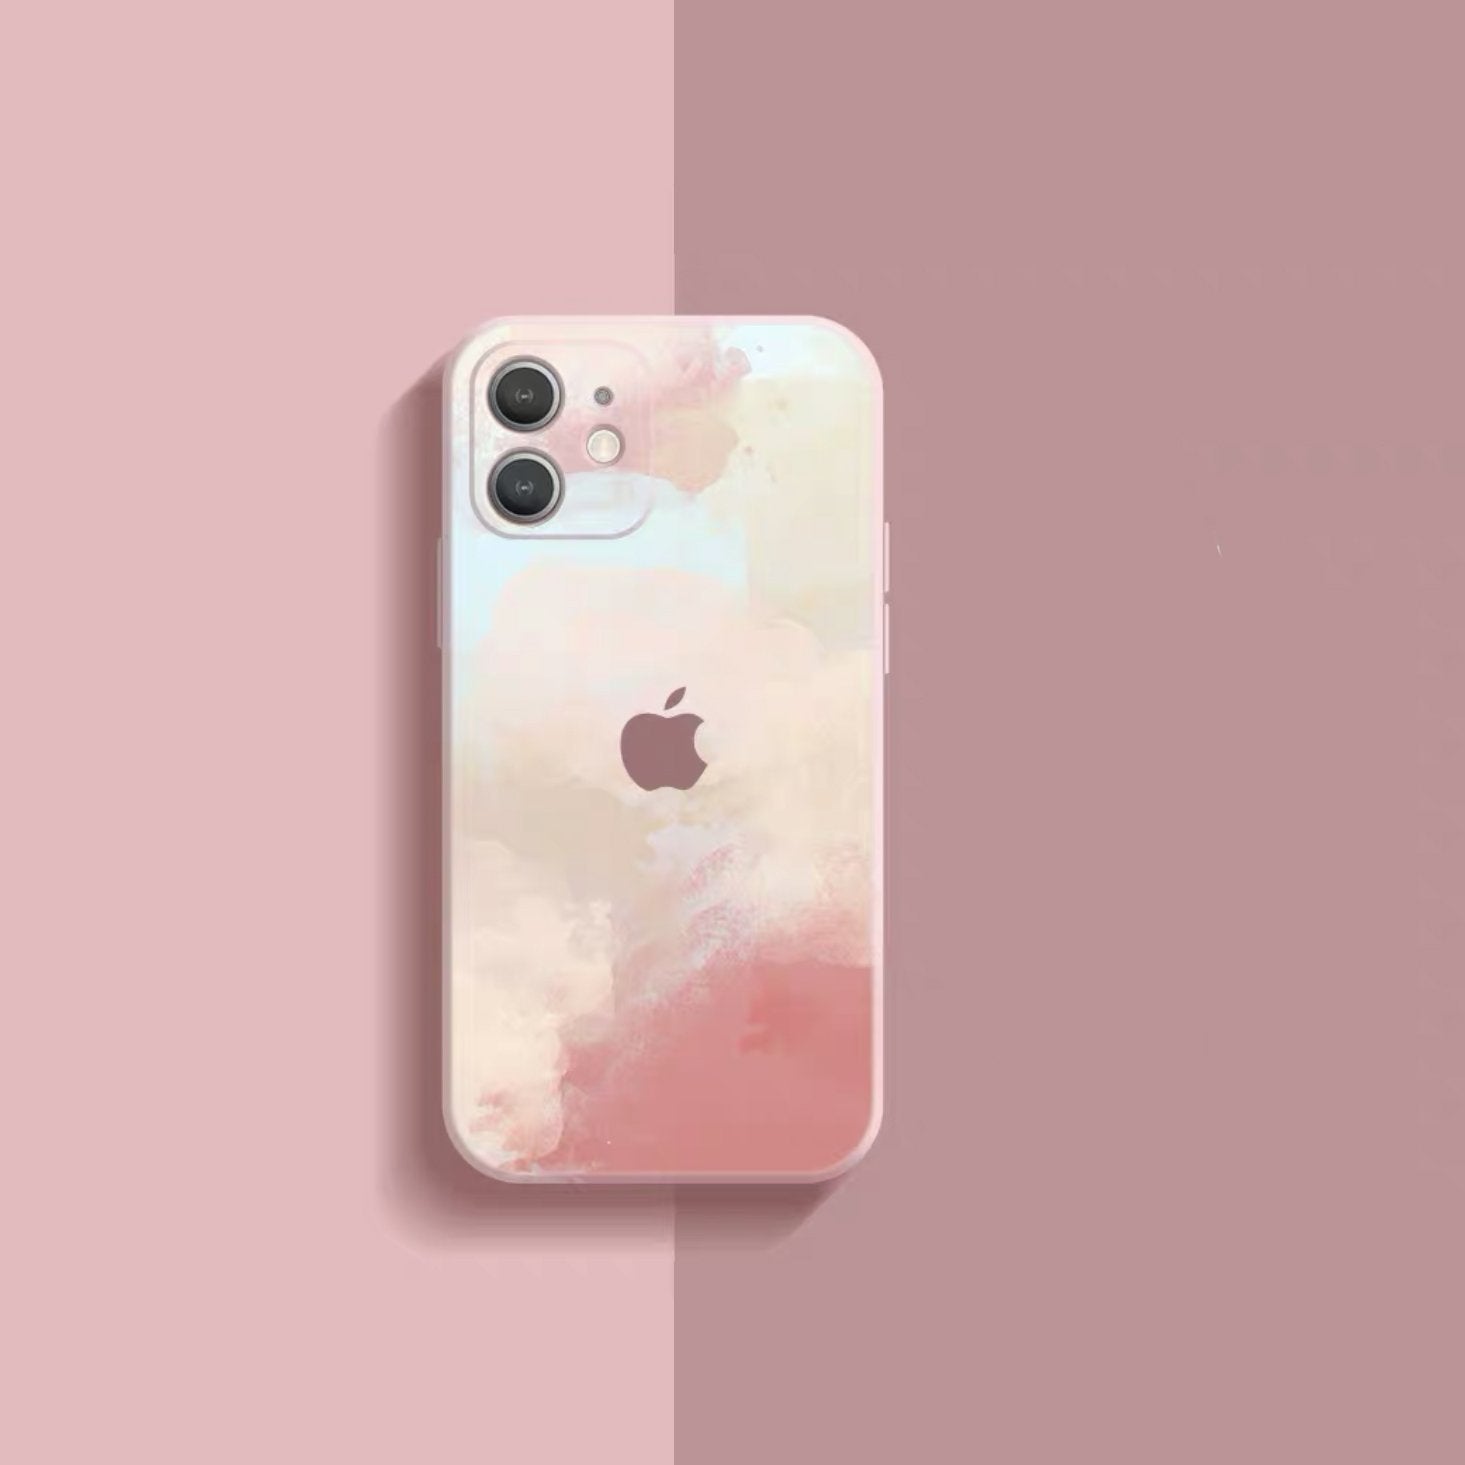 Coloursplash Canvas iPhone Soft Case